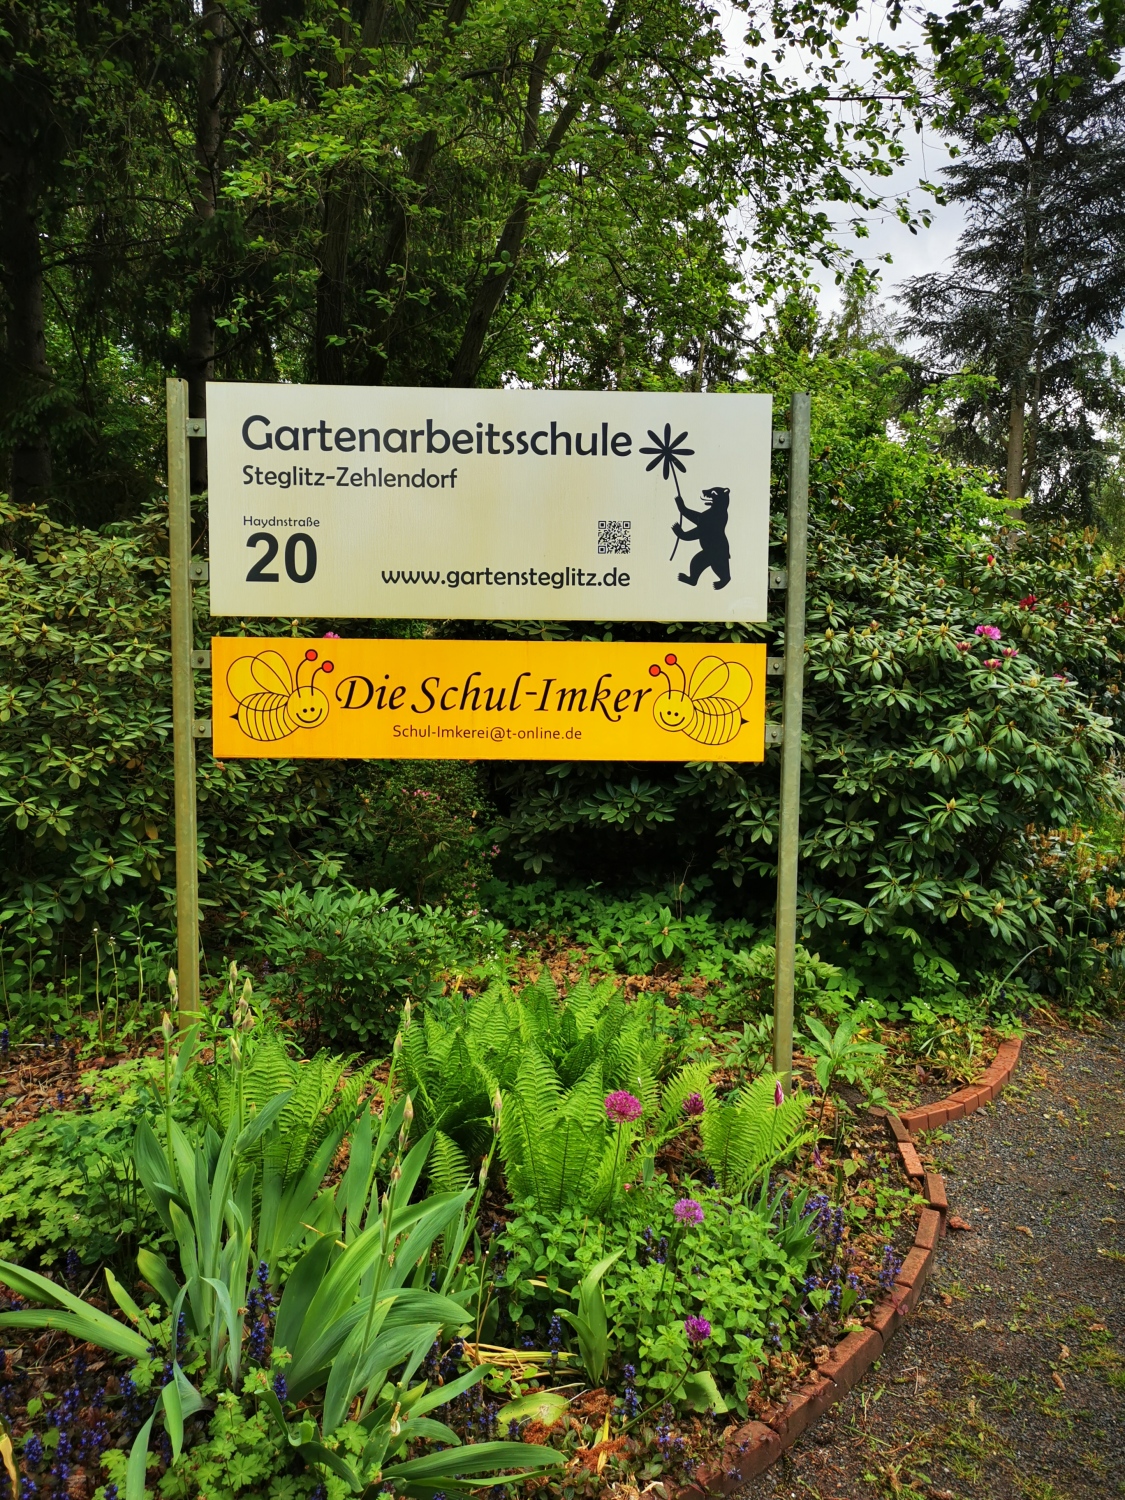 Übergabe Leitbild vom Beirat der Koordinierungsstelle NUN an BzStRin Schellenberg - Gartenarbeitsschule Steglitz-Zehlendorf